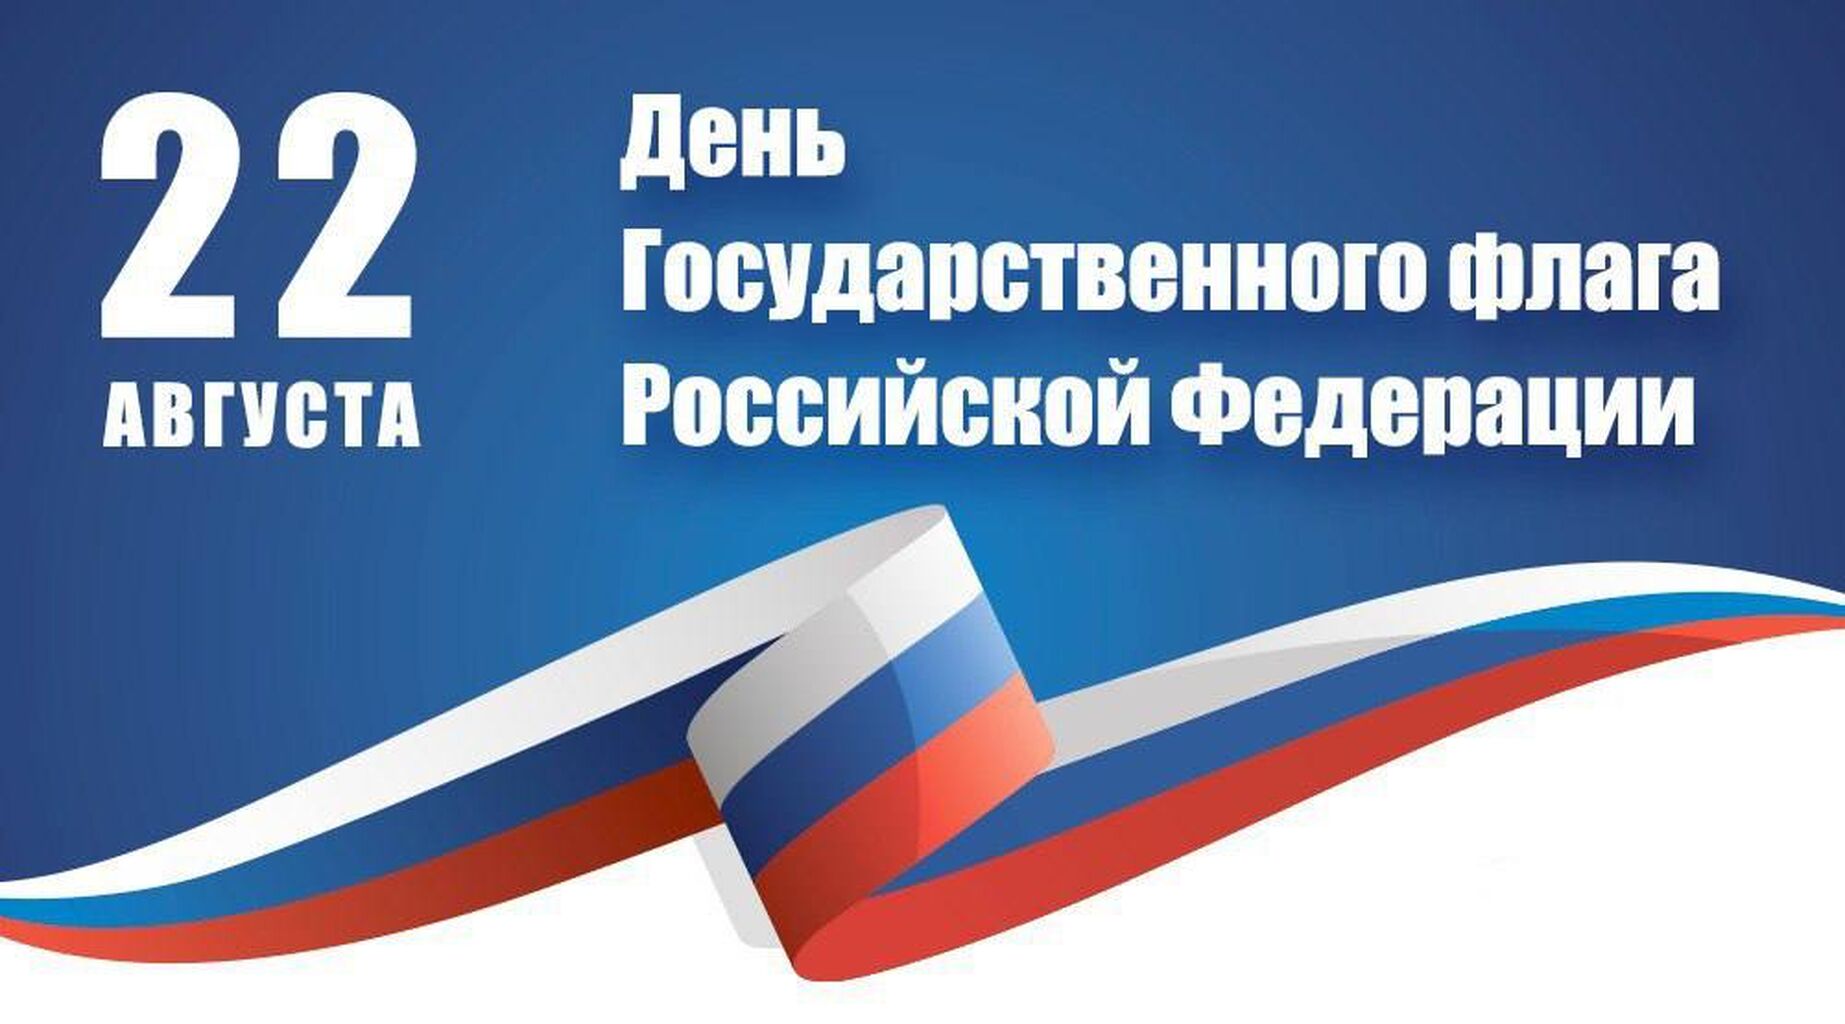 Знак праздника день государственного флага Российской Федерации